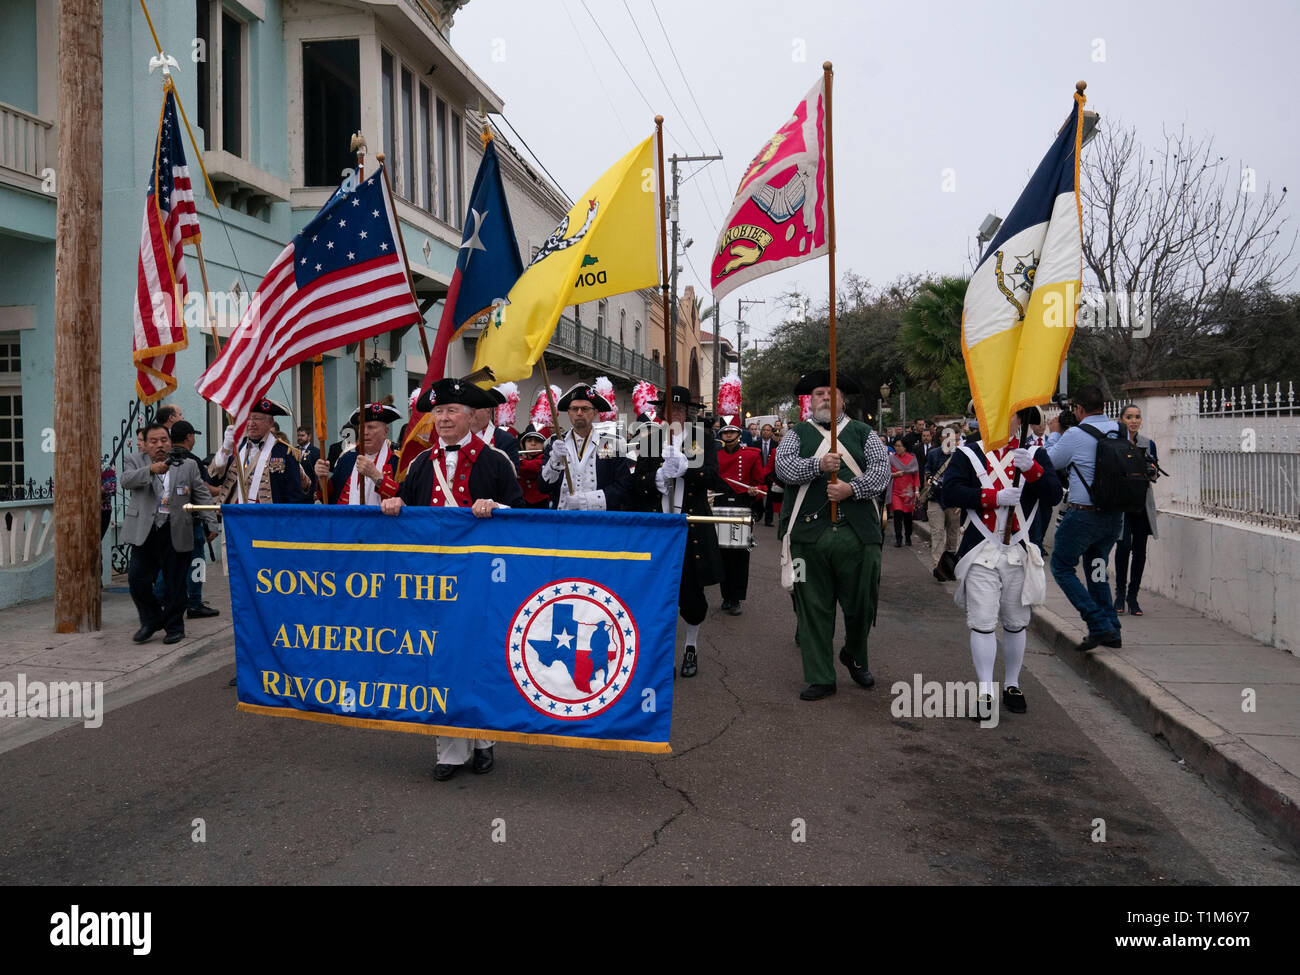 Männer im Amerikanischen Unabhängigkeitskrieg stil Kostüme März in Washington's Birthday Celebration Parade durch die Innenstadt von Laredo, TX. Stockfoto